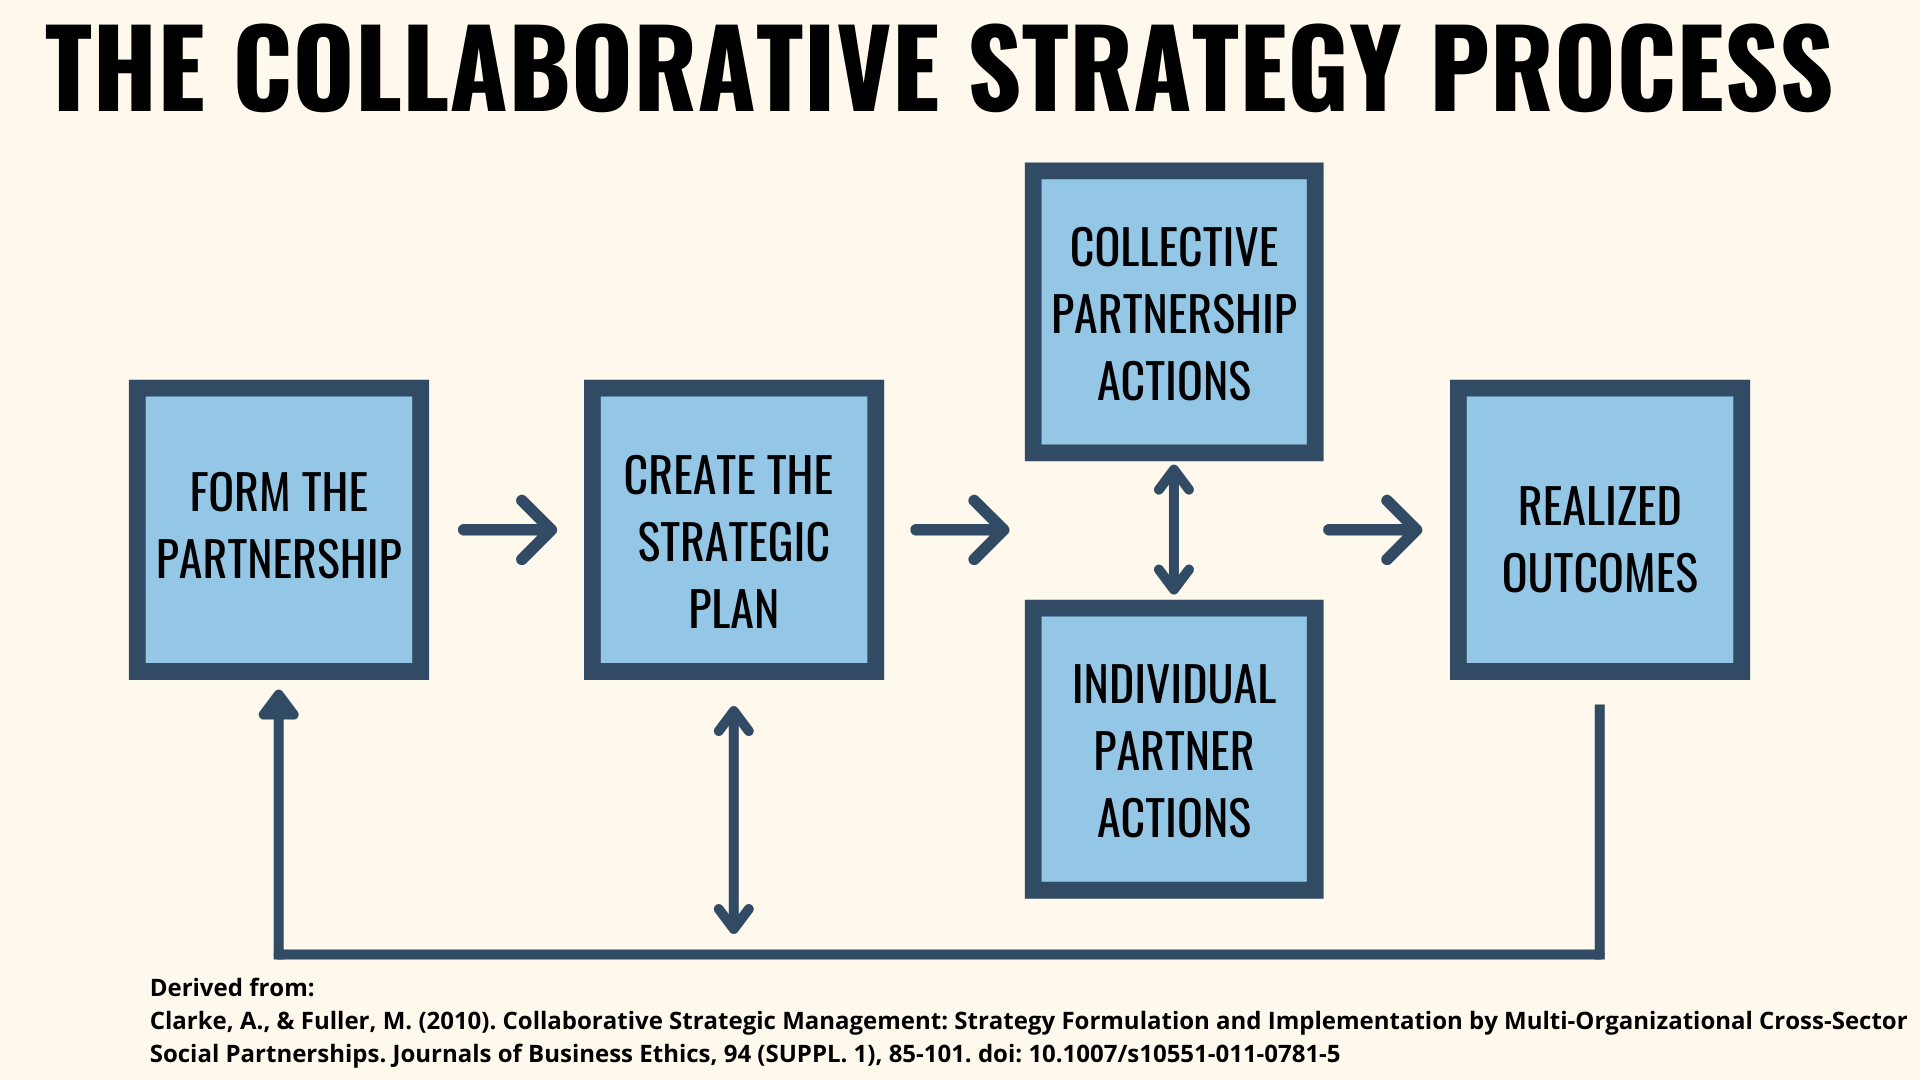 The Collaborative Strategic Process